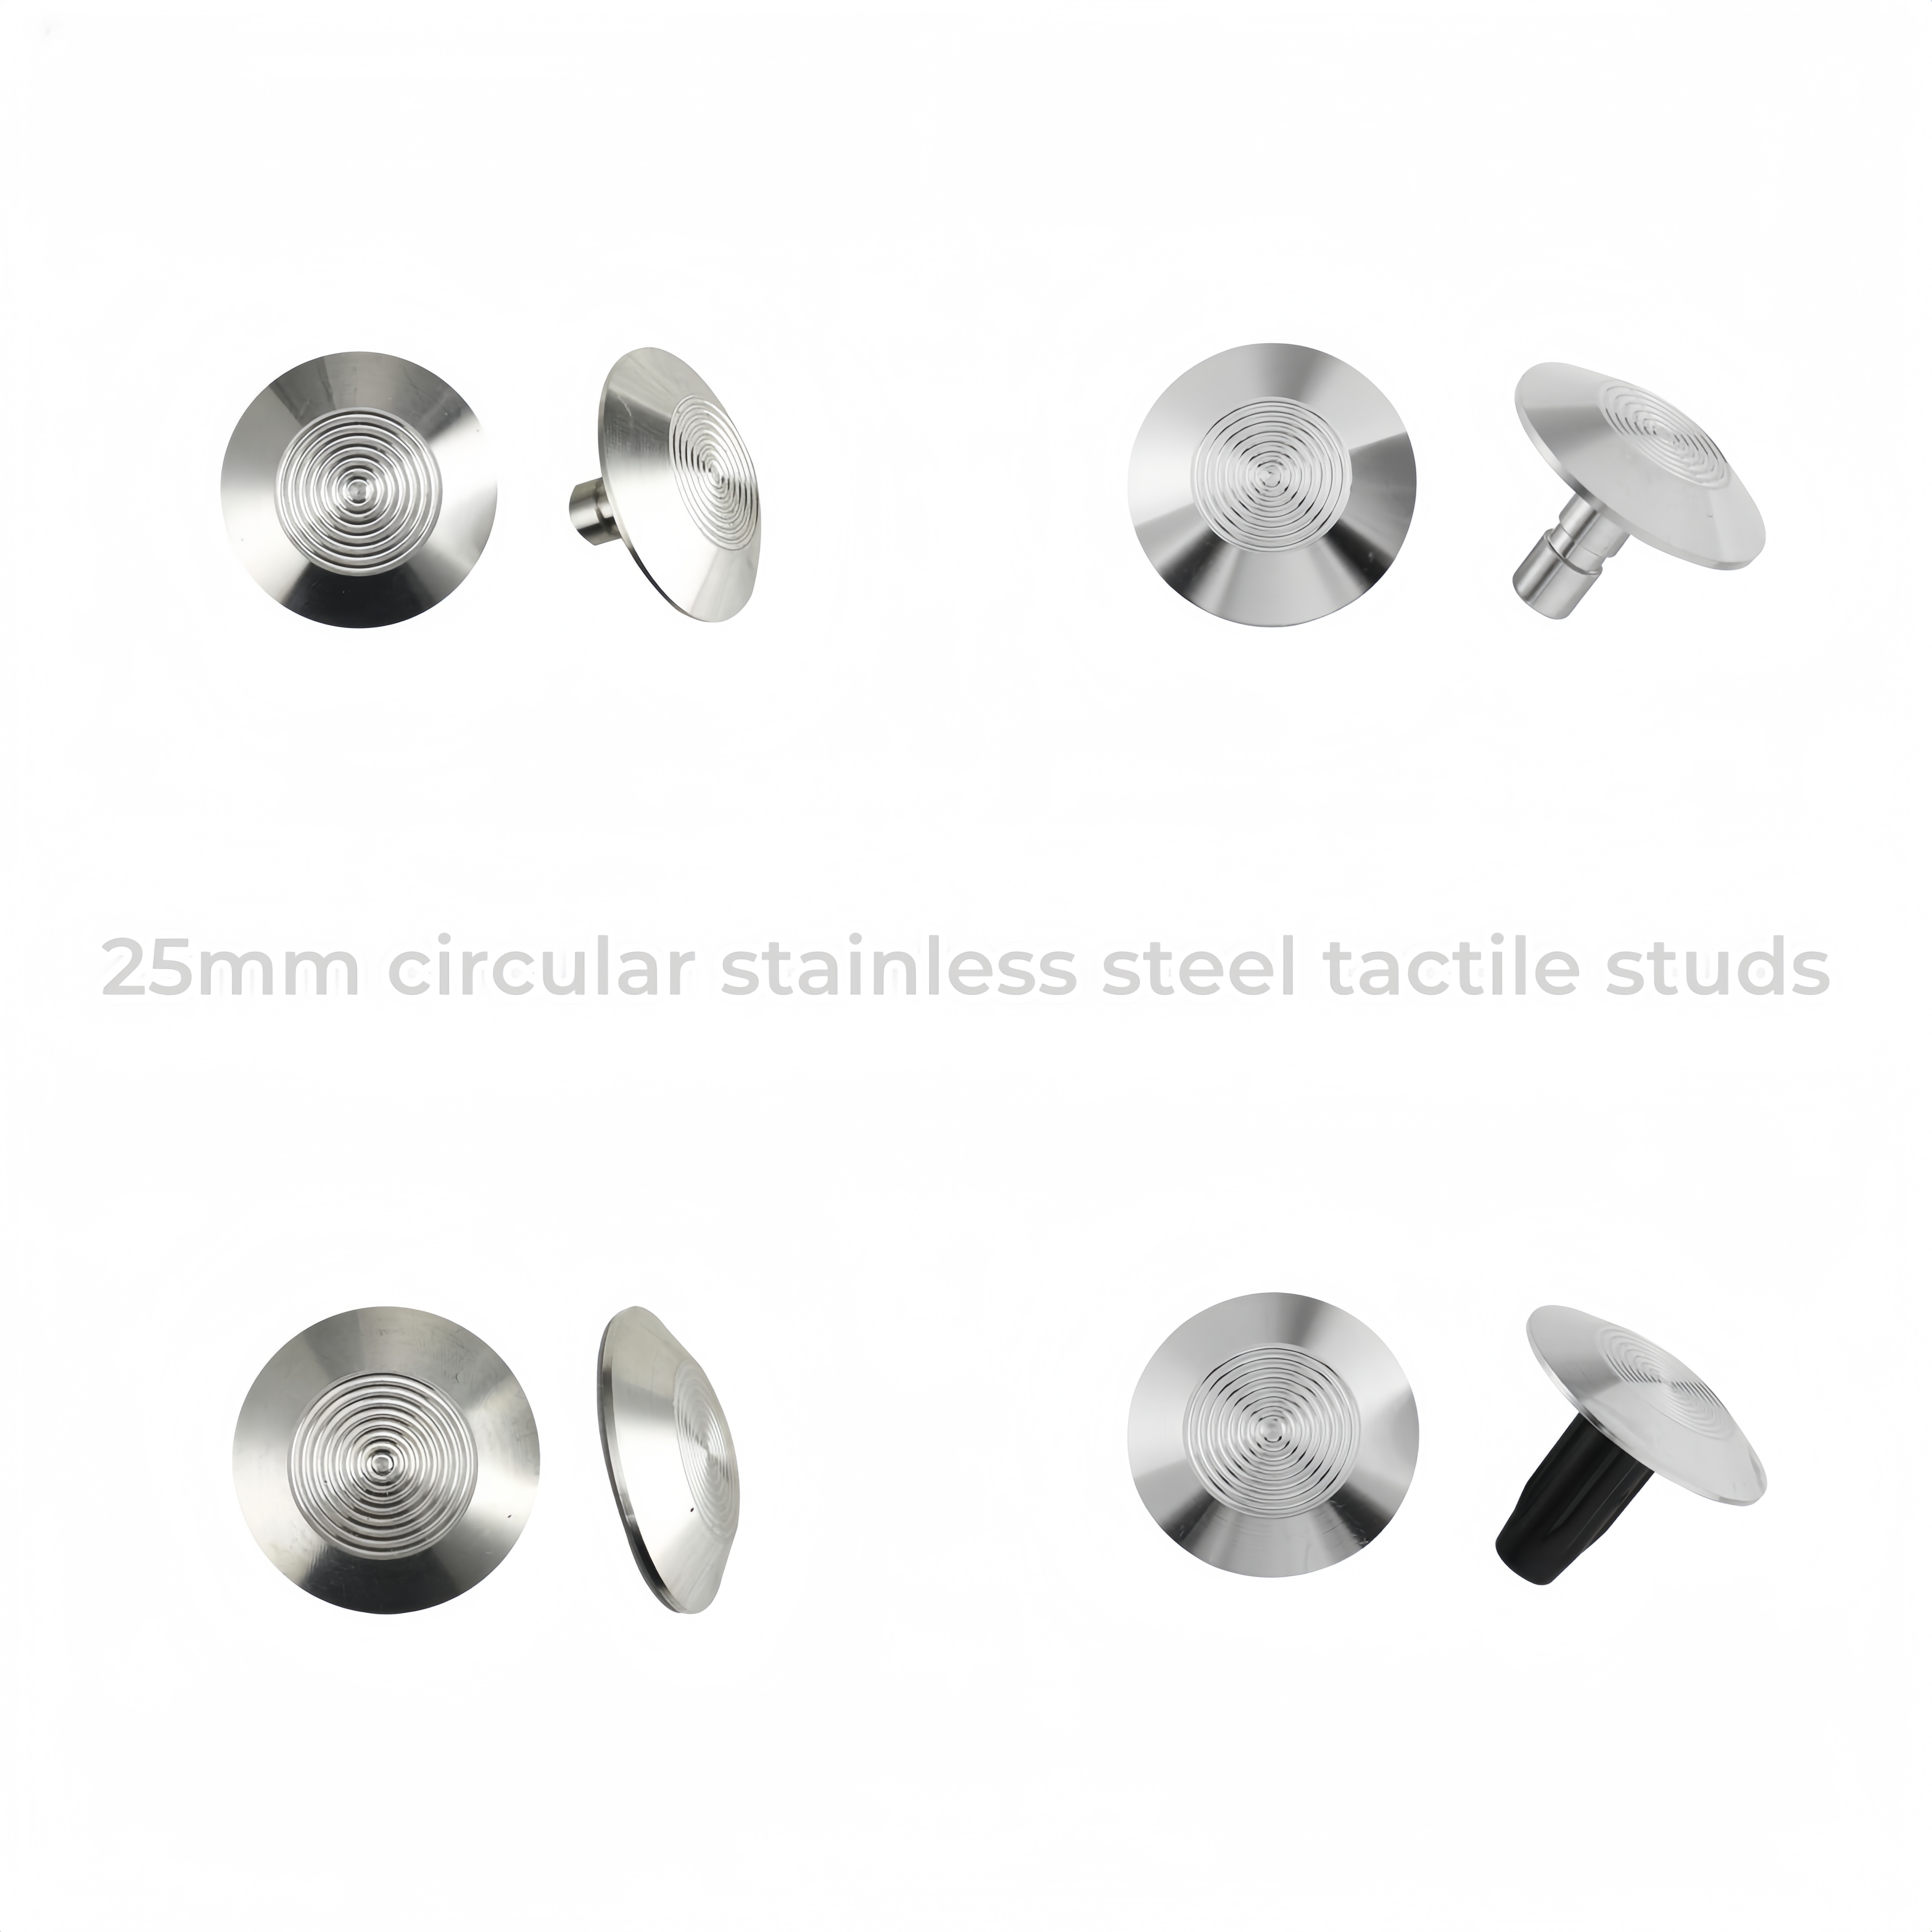 Perno circular táctil de acero inoxidable de 25 mm para personas ciegas RY-DS129